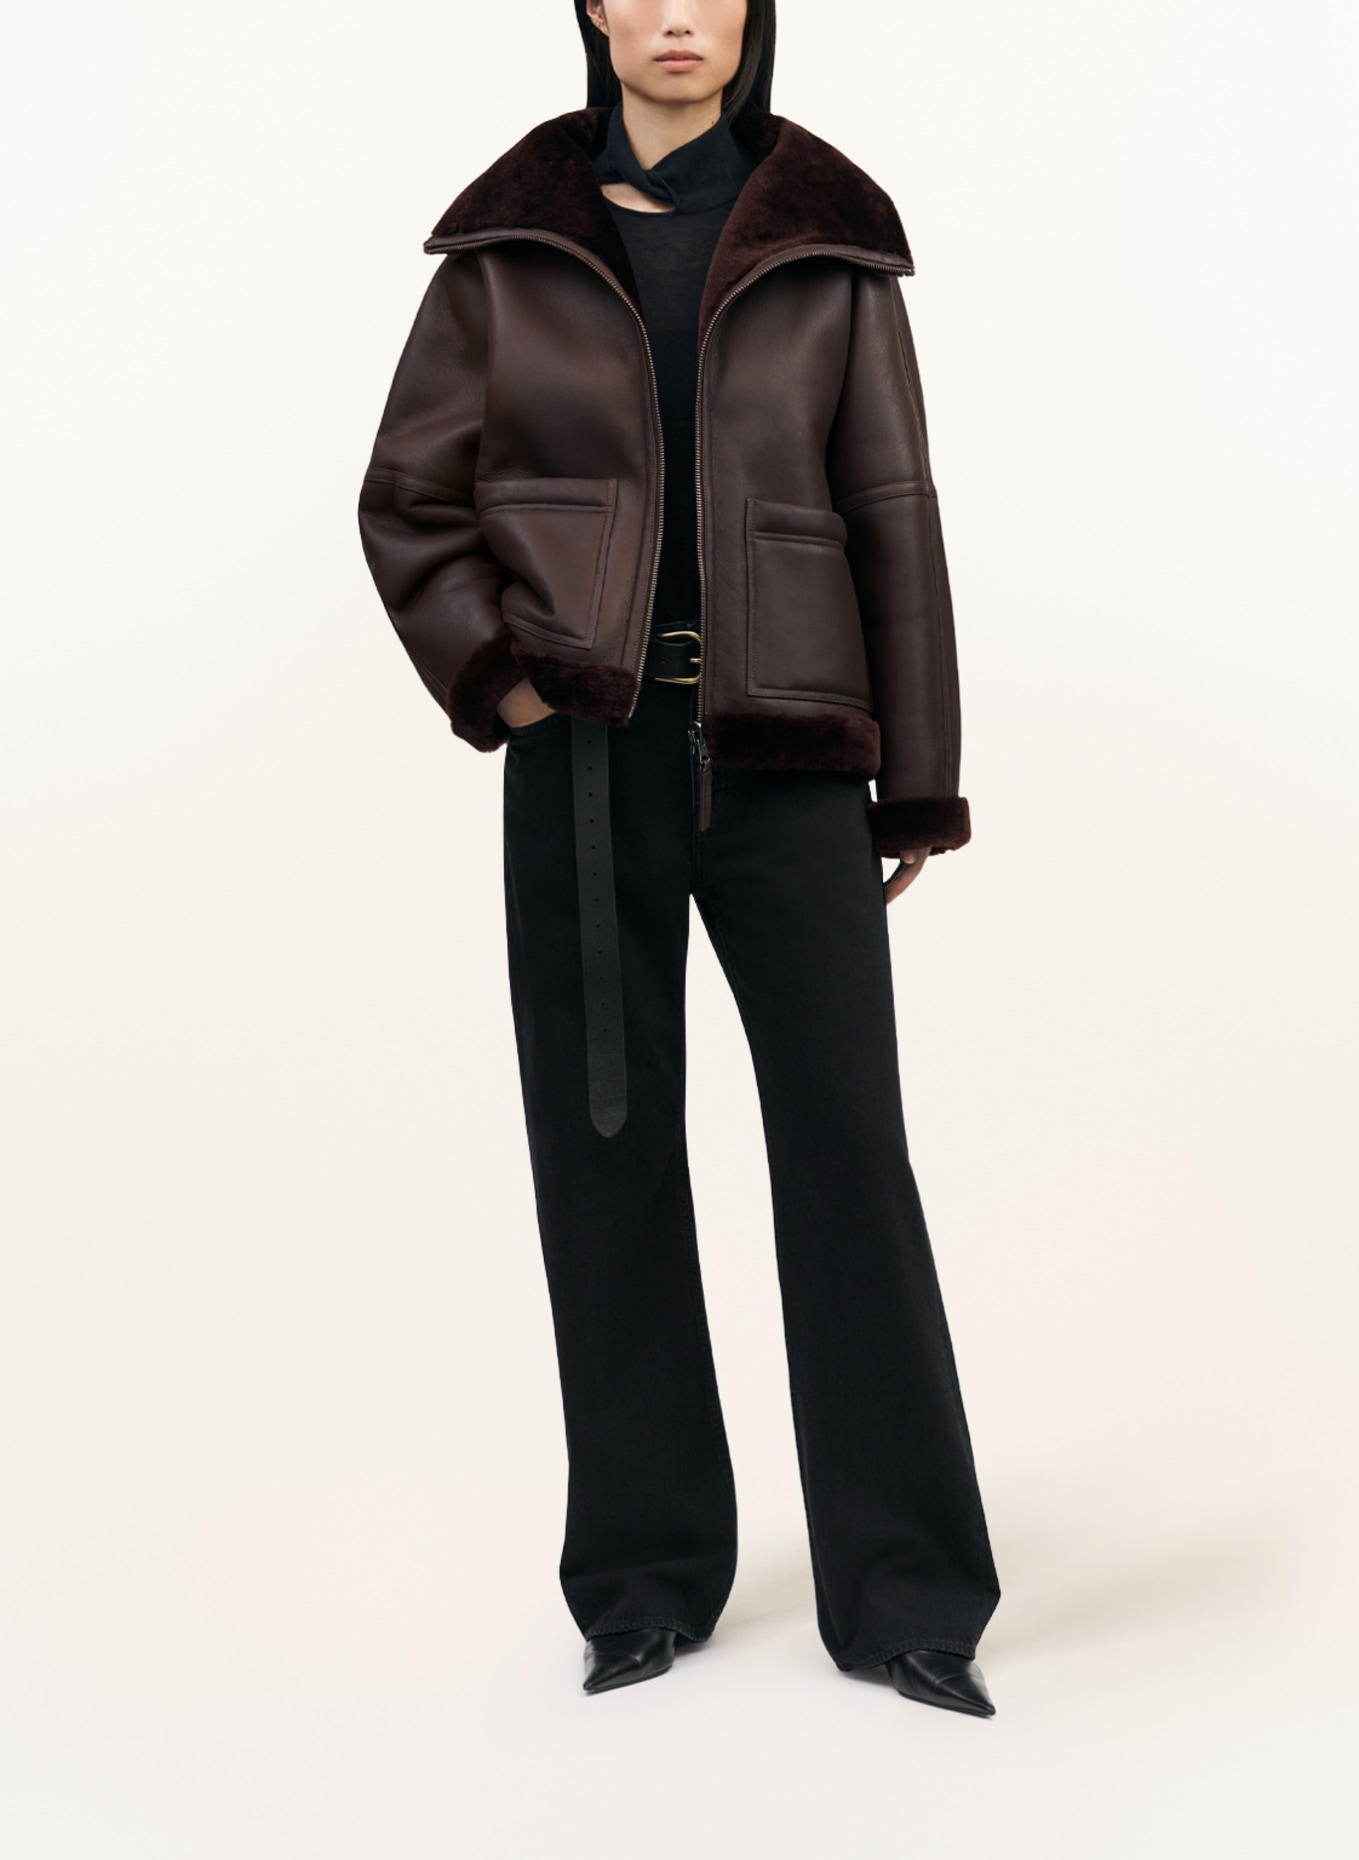 TIGER OF SWEDEN Lambskin jacket ENELE reversible, Color: BROWN (Image 2)